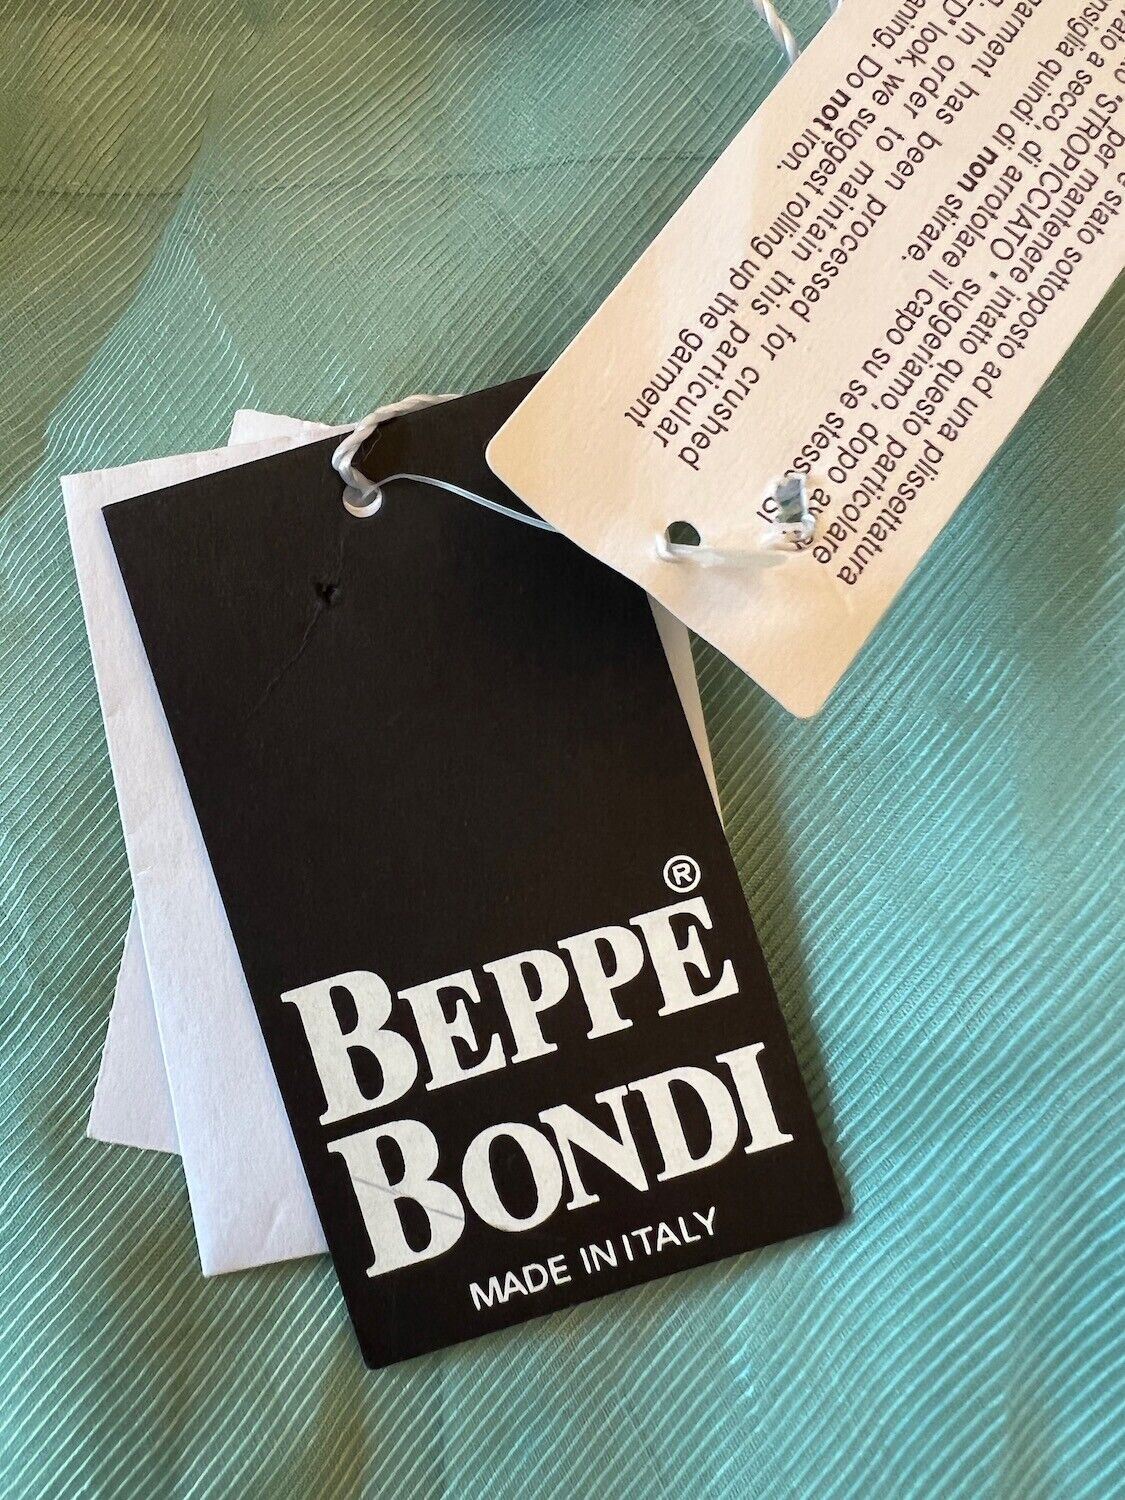 Beppe Bondi Duck Egg Green Crinkle Tulle Pencil Skirt UK 14 US 10 EU 42 IT 46 BNWT Timeless Fashions